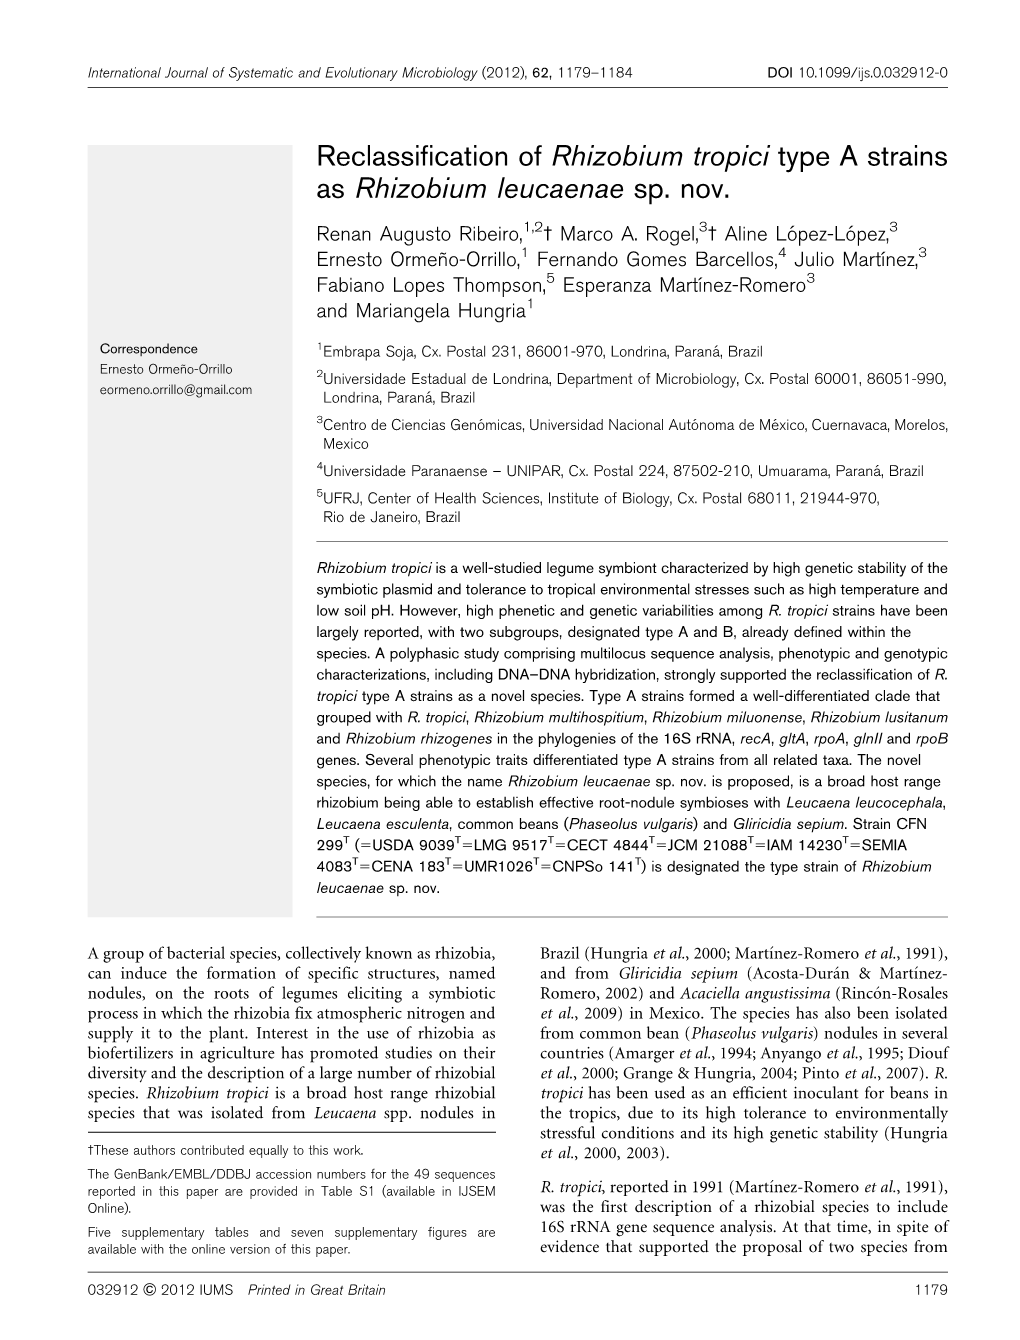 Reclassification of Rhizobium Tropici Type a Strains As Rhizobium Leucaenae Sp